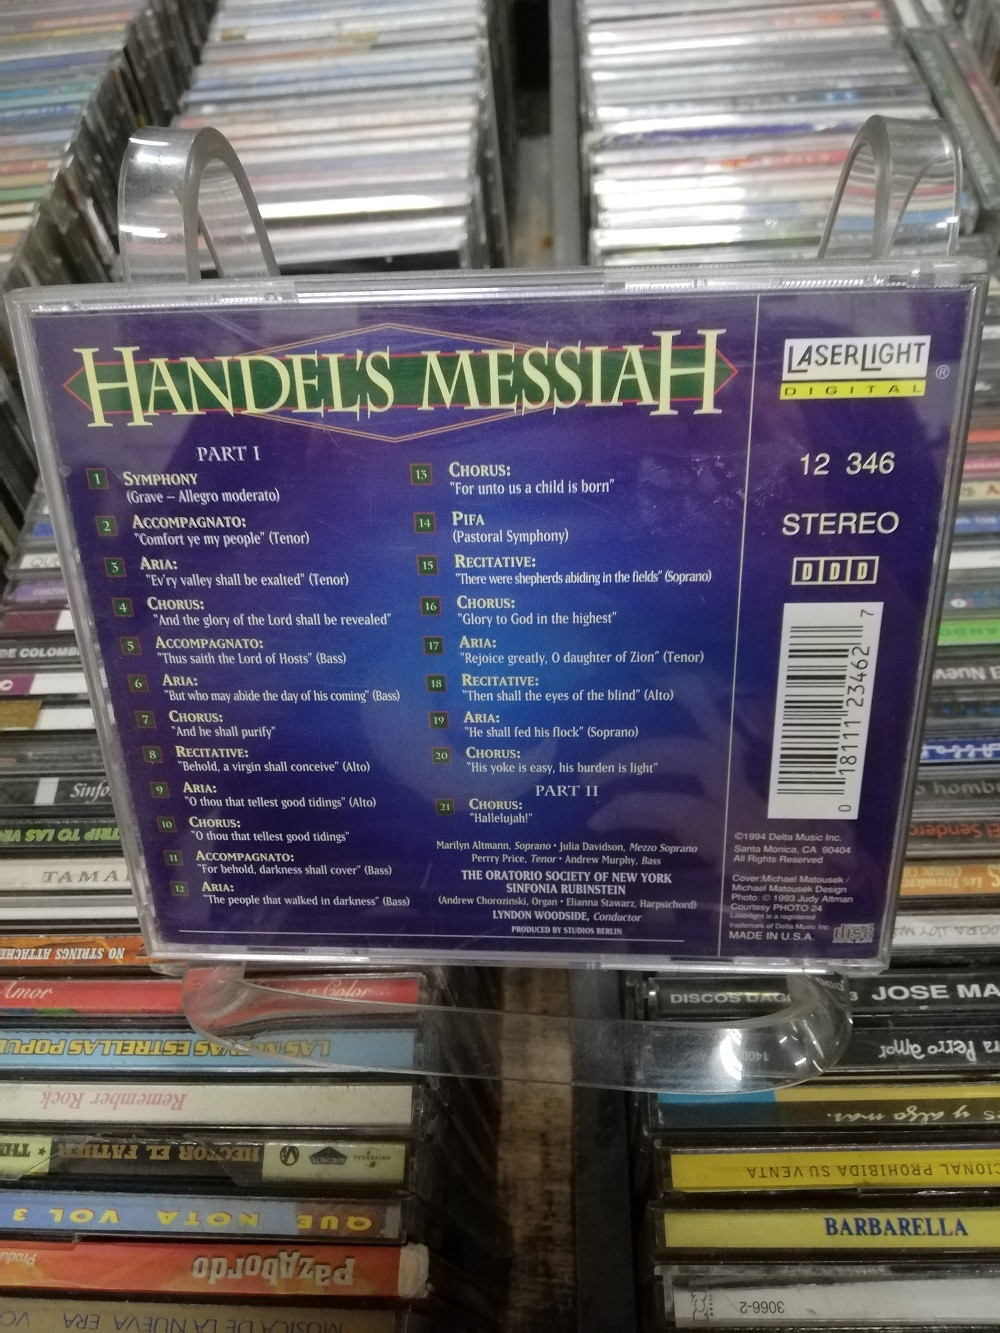 Imagen CD HANDEL´S MESSIAH 2